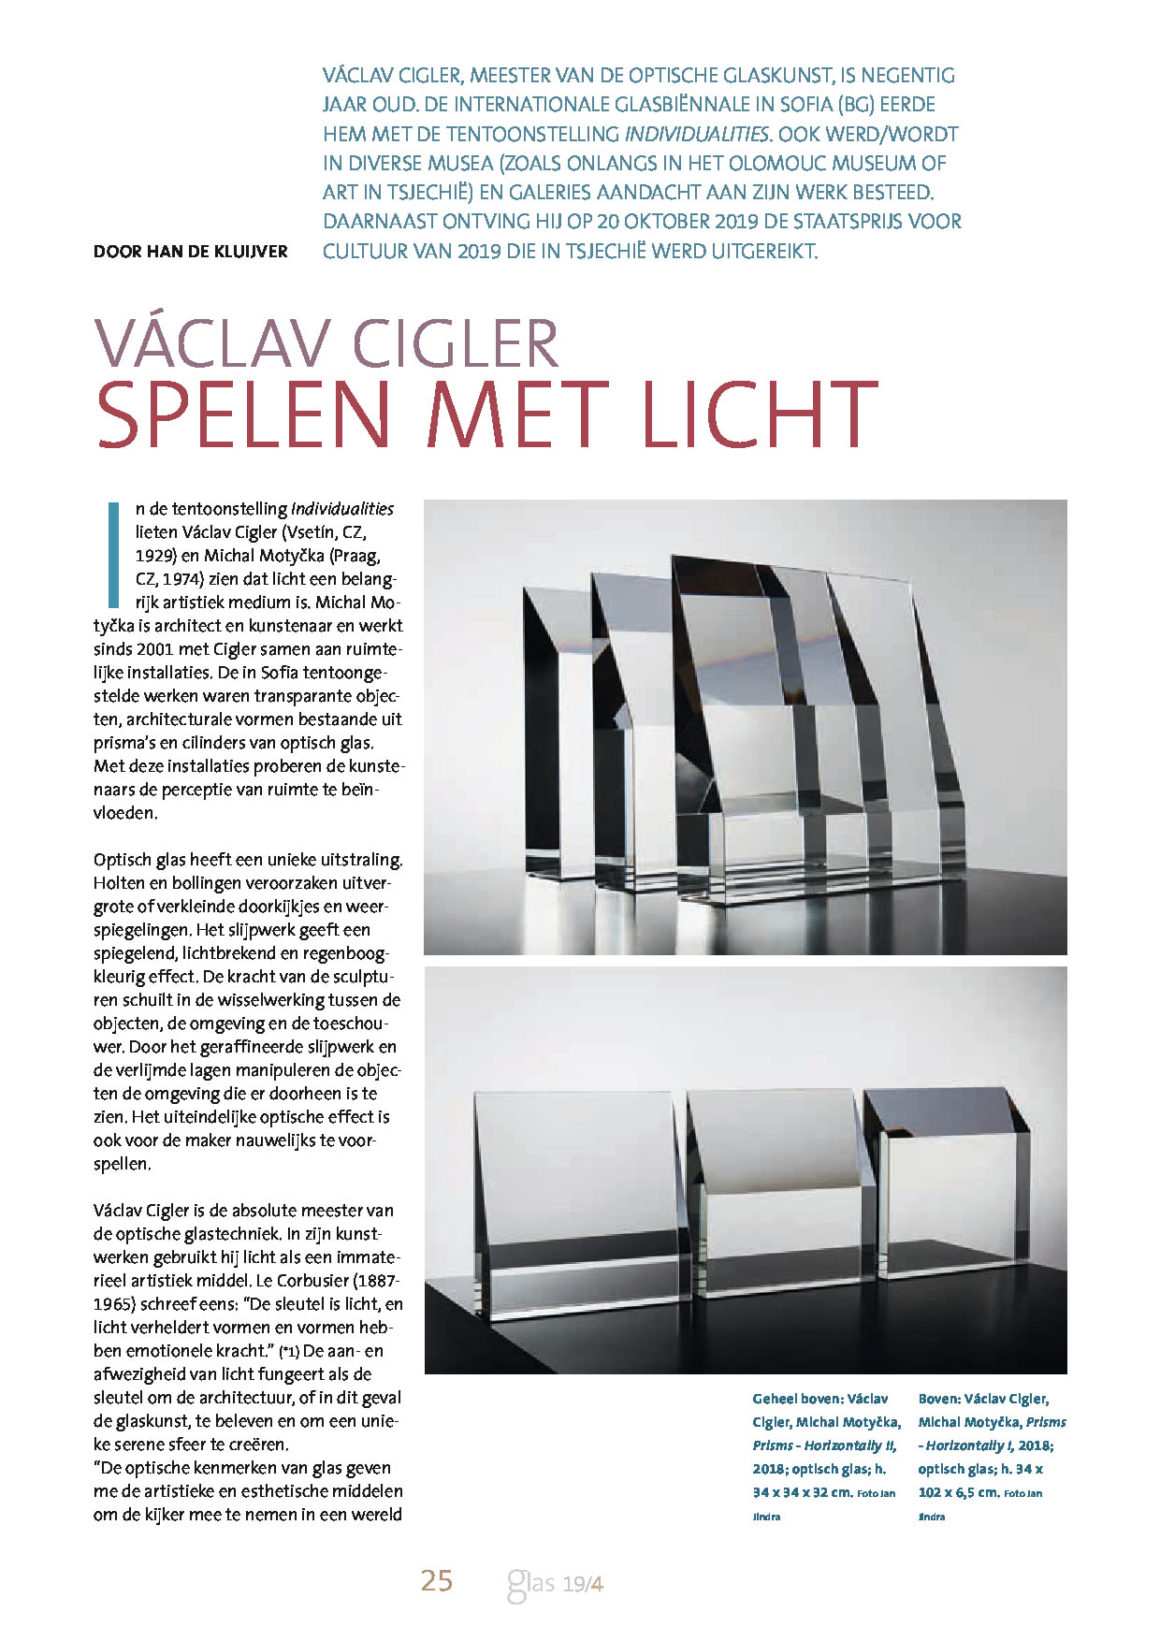 Article “Václav Cigler. Playing with light” by Door Han De Kluijver in Glas – Magazine voor Glaskunst